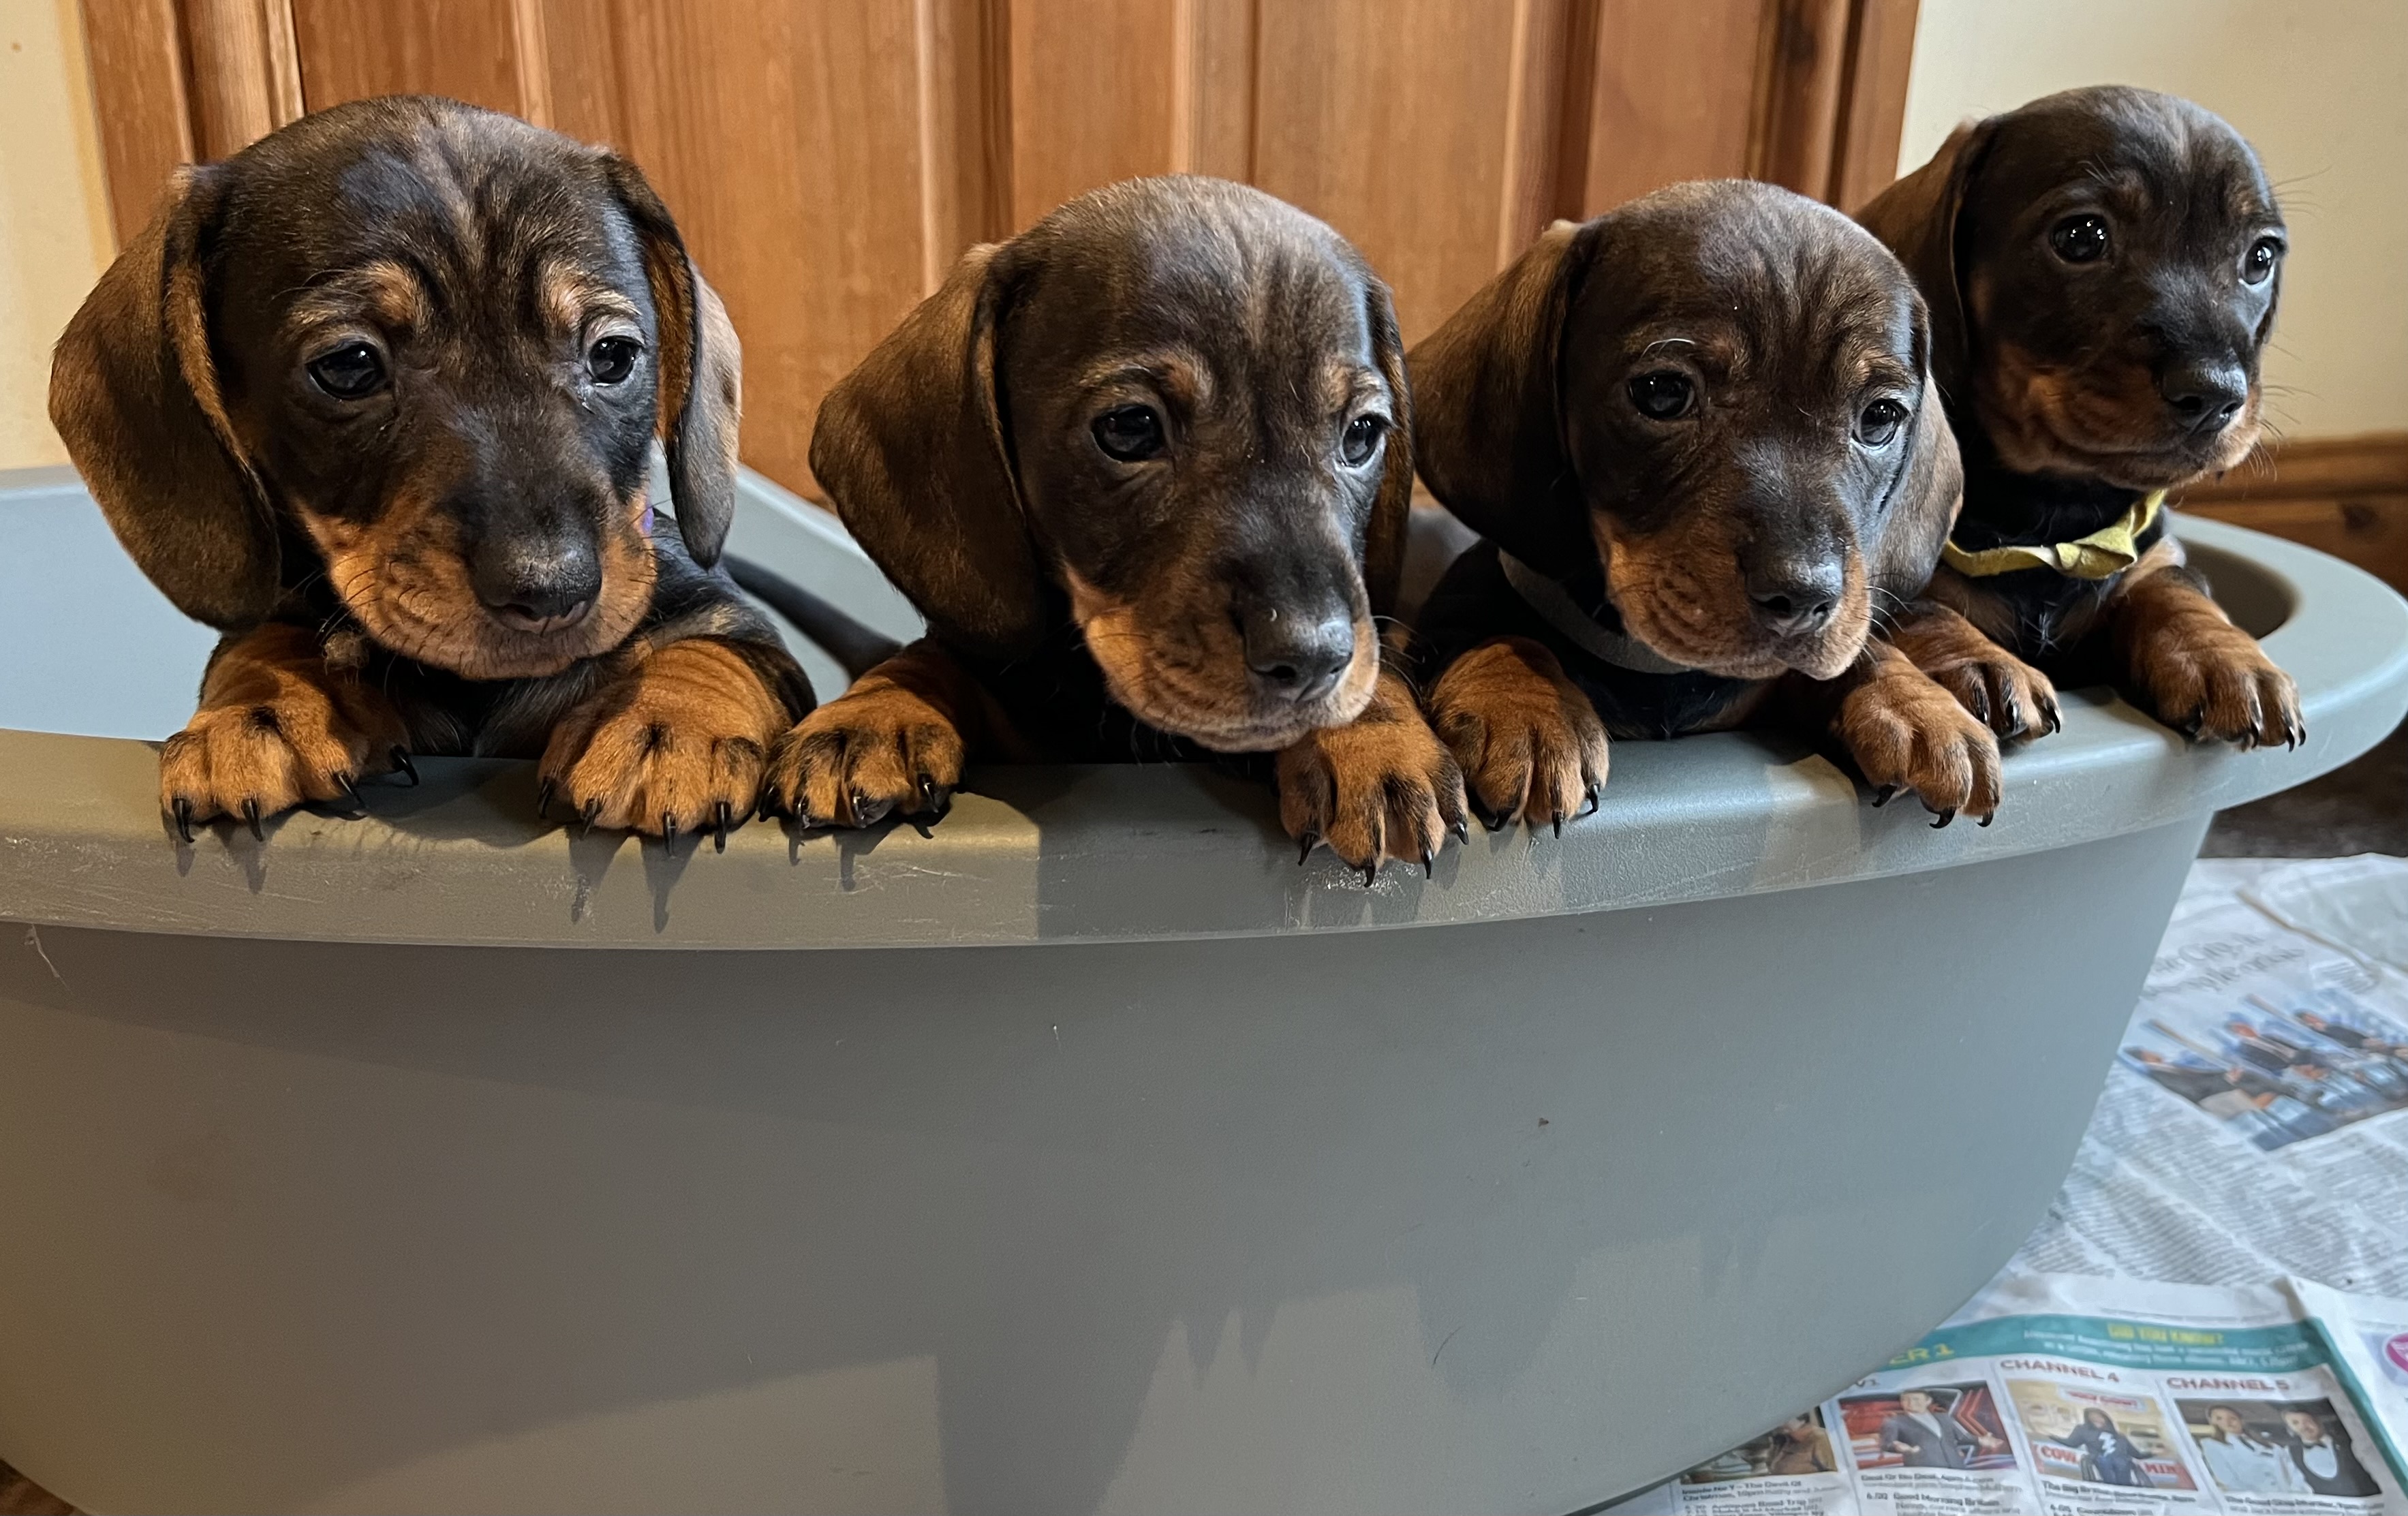 Standard Dachsund Puppies for Sale